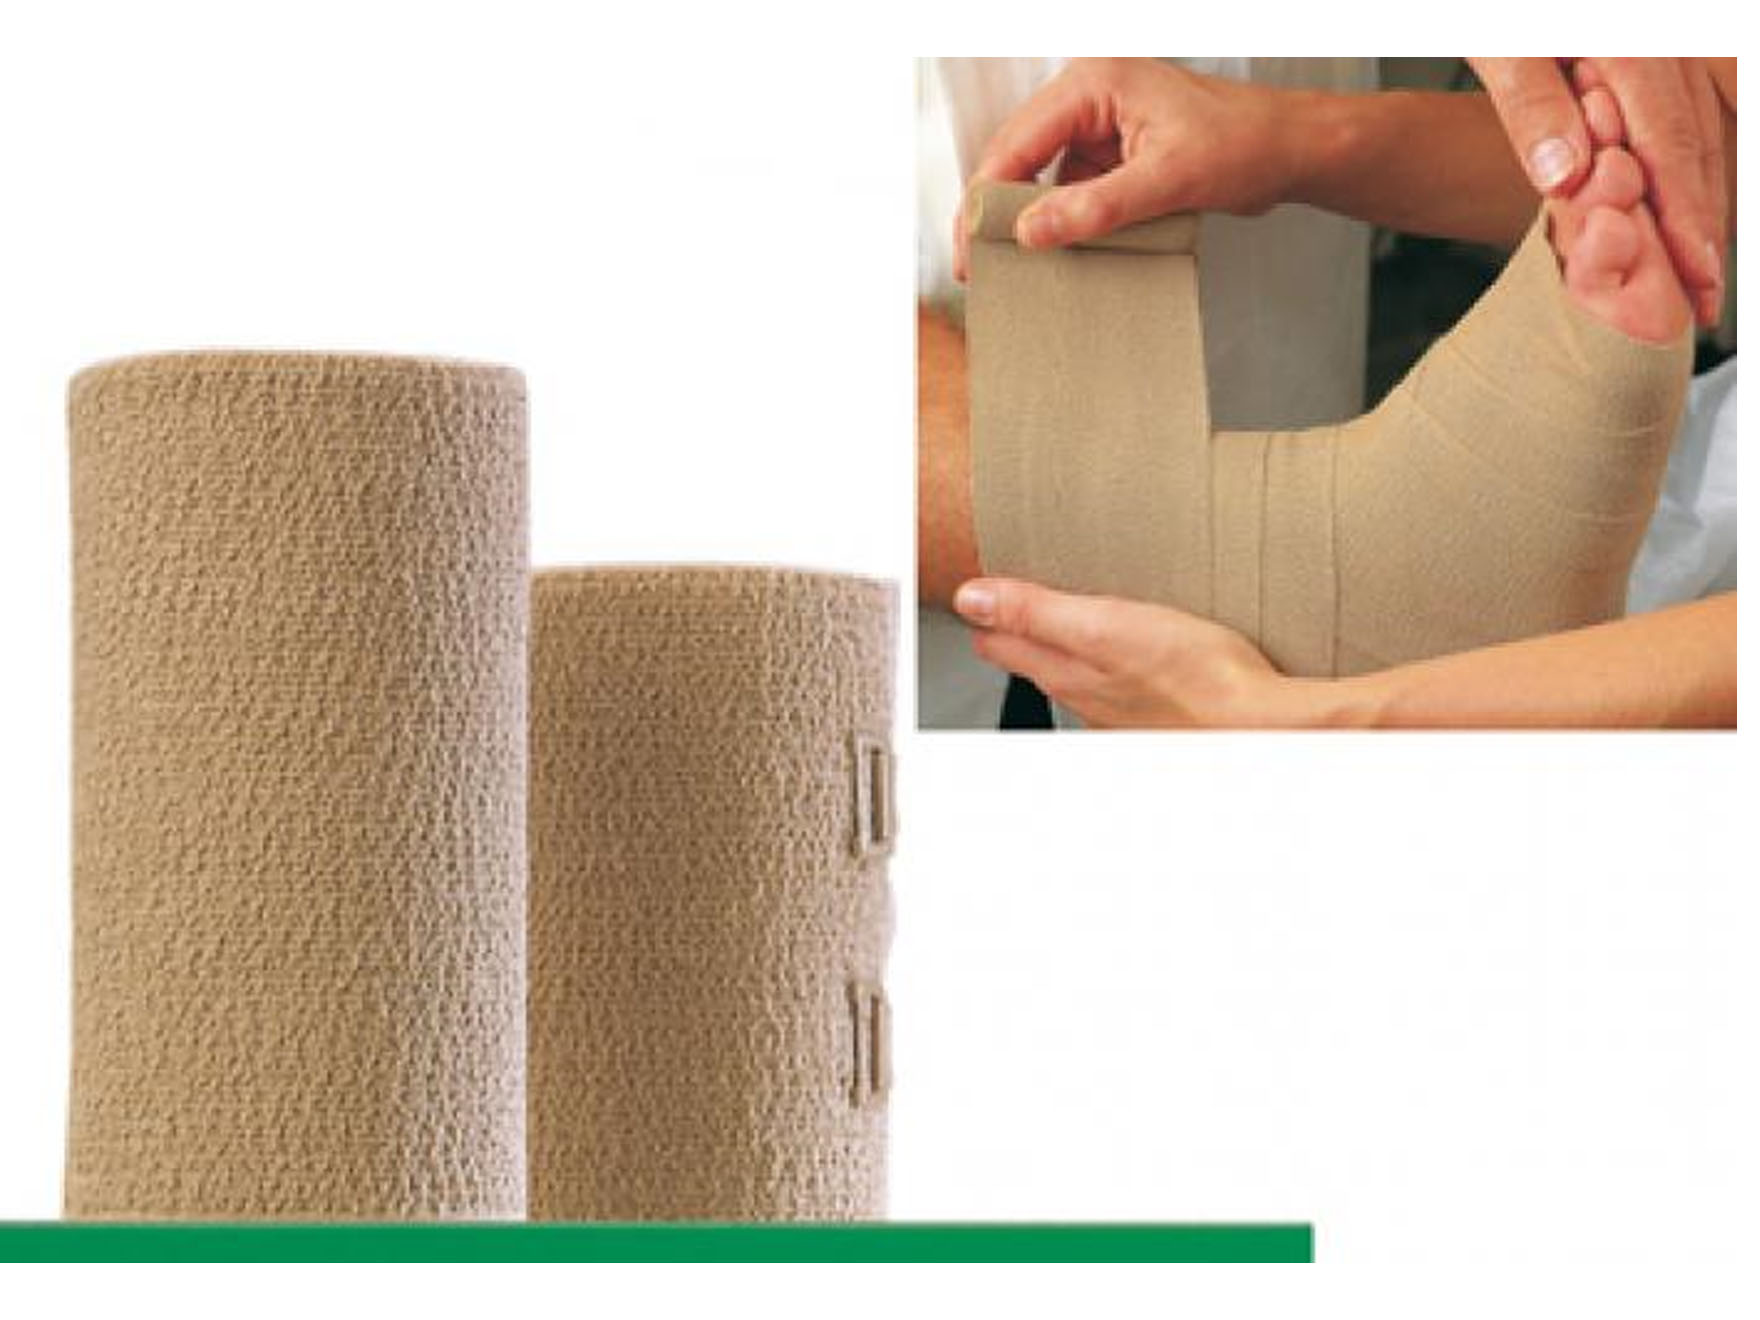 Dauerbinde® K - bande à allongement long - surface texturée - 10 cm x 7 m - 1 pc